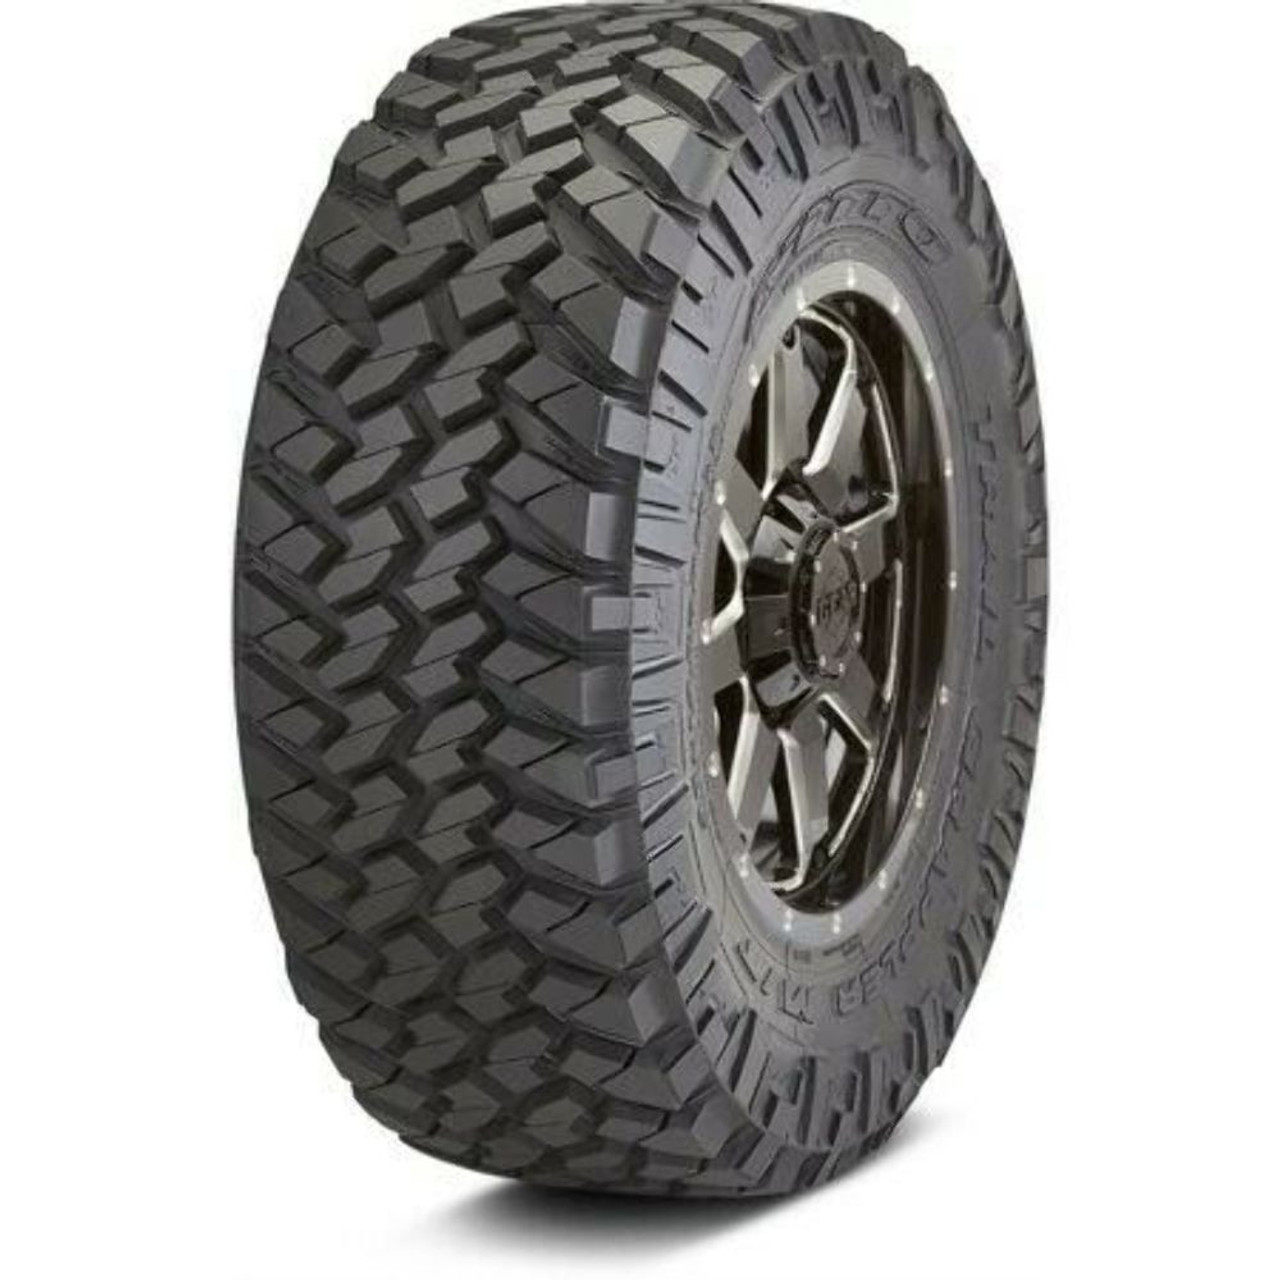 LT265/75R16 E Set 4 Nitto Trail Grappler Mud Terrain Tires 123P 31.9 2657516